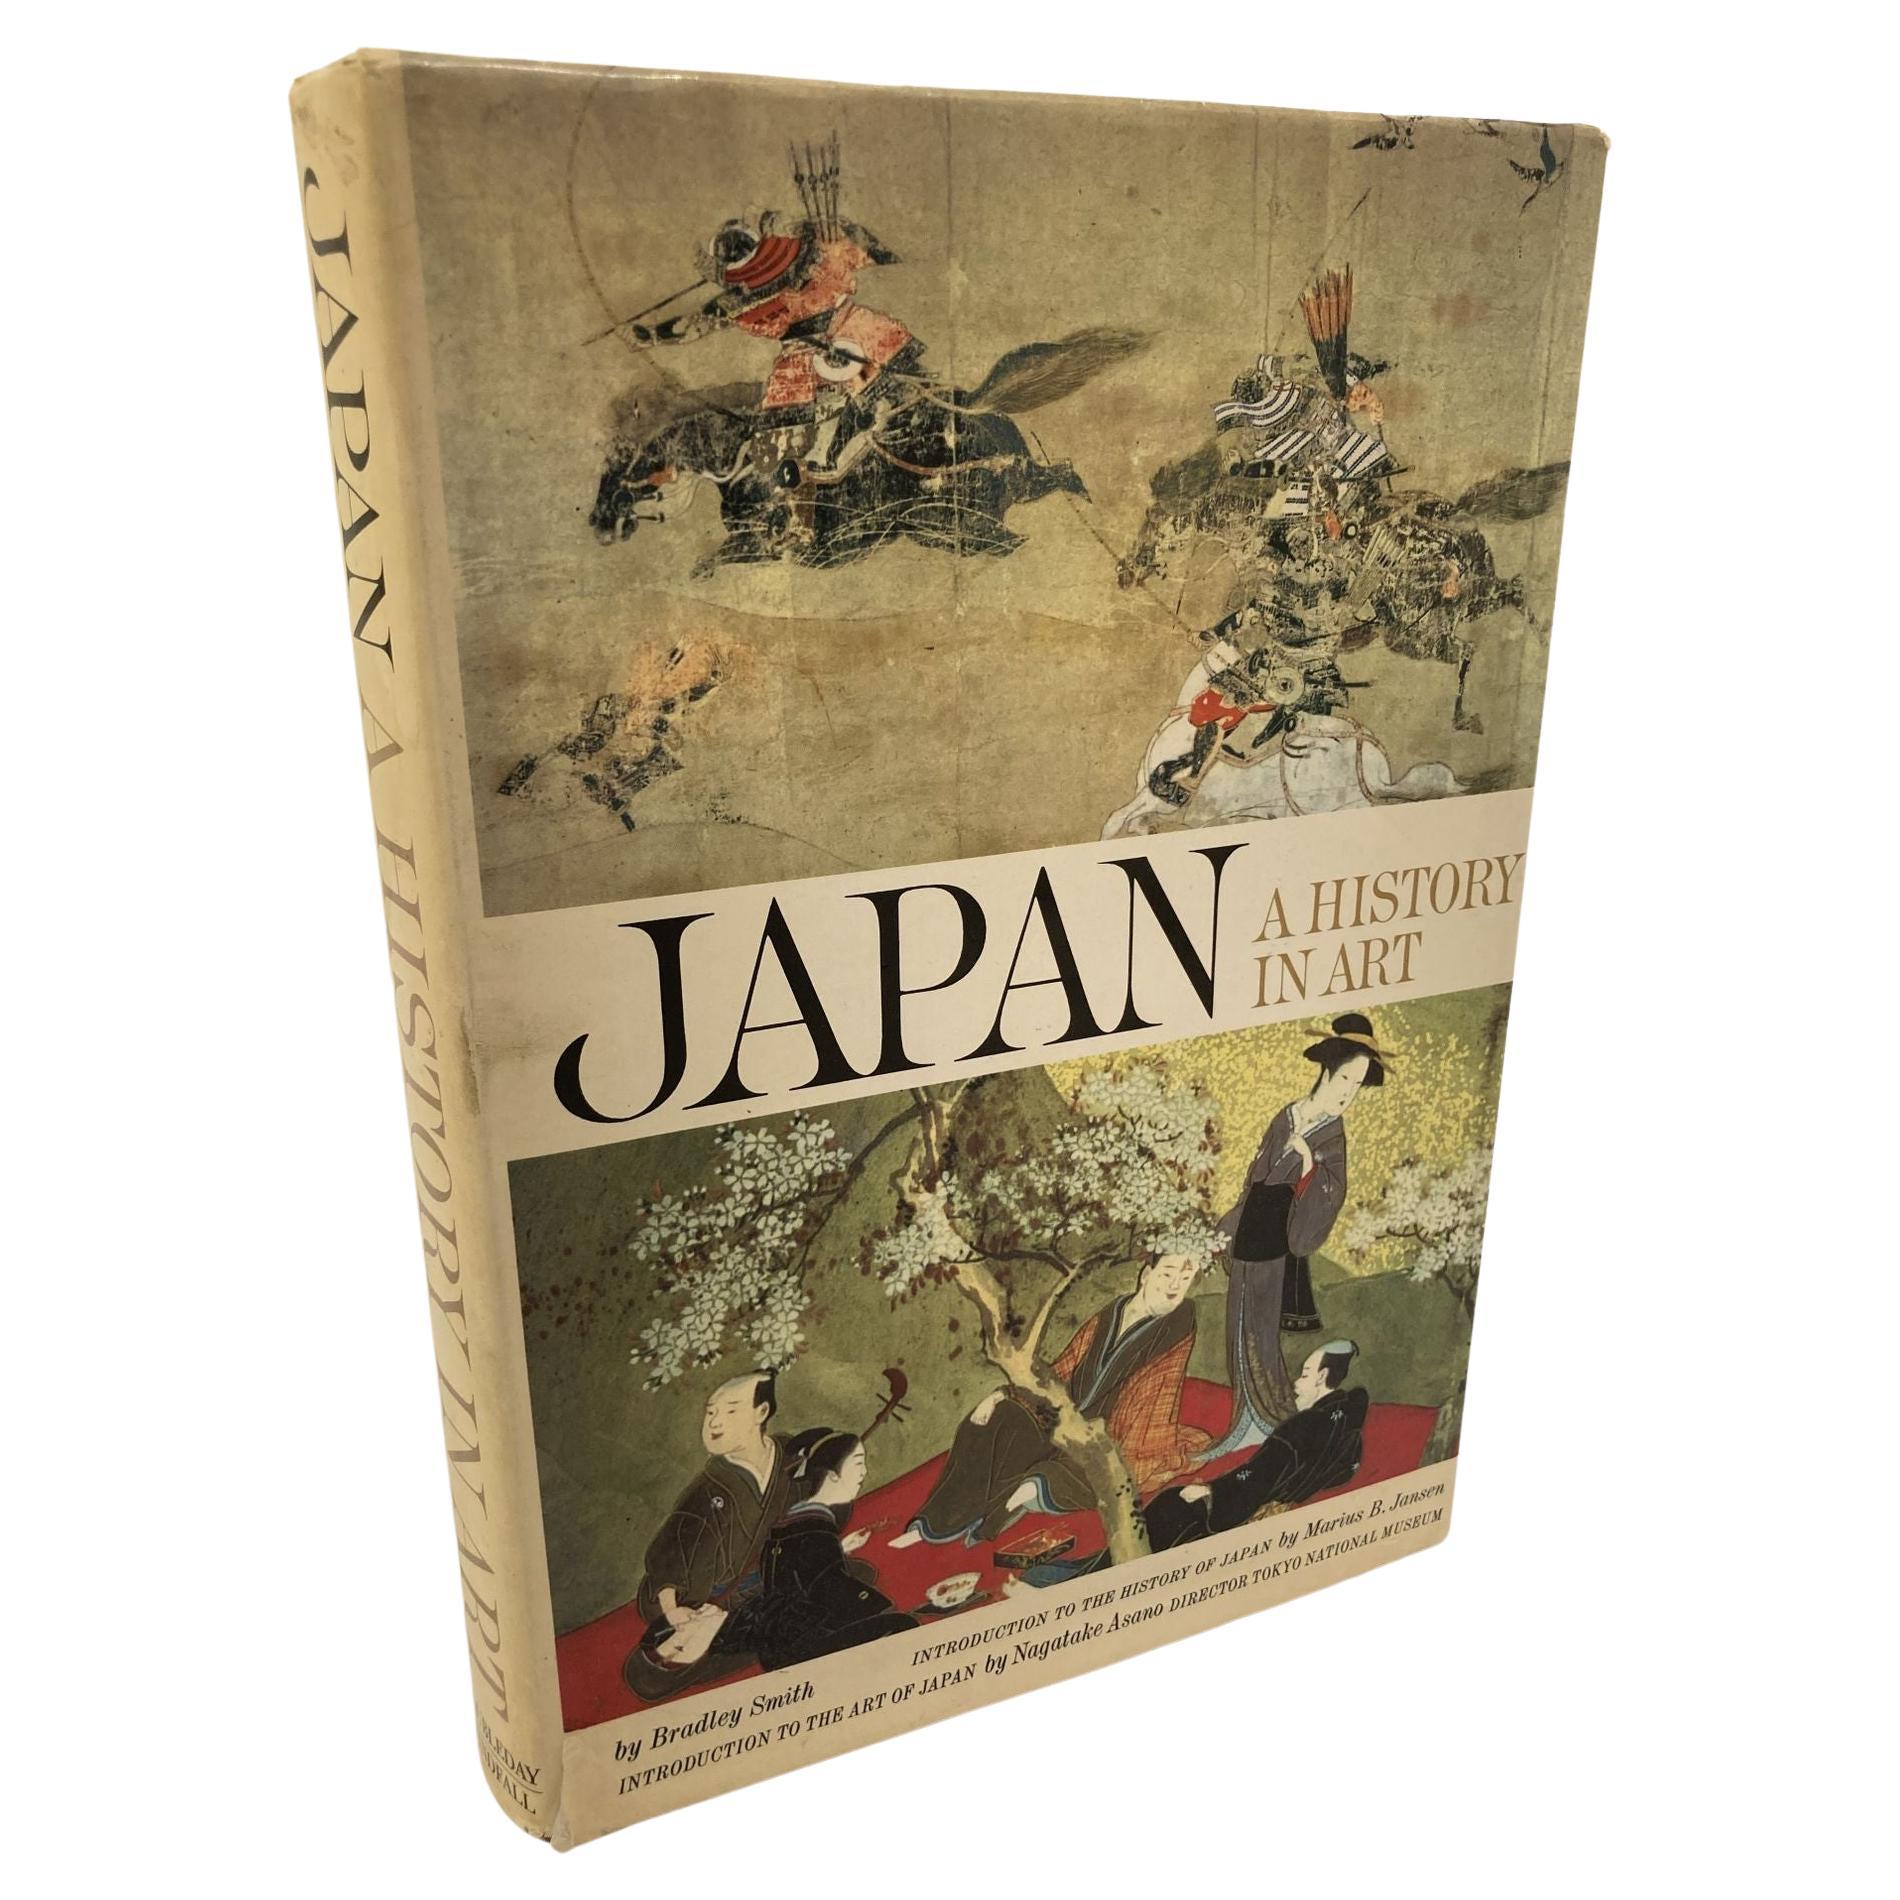 Le Japon une histoire dans l'art, livre de Bradley Smith, 1ère édition 1964